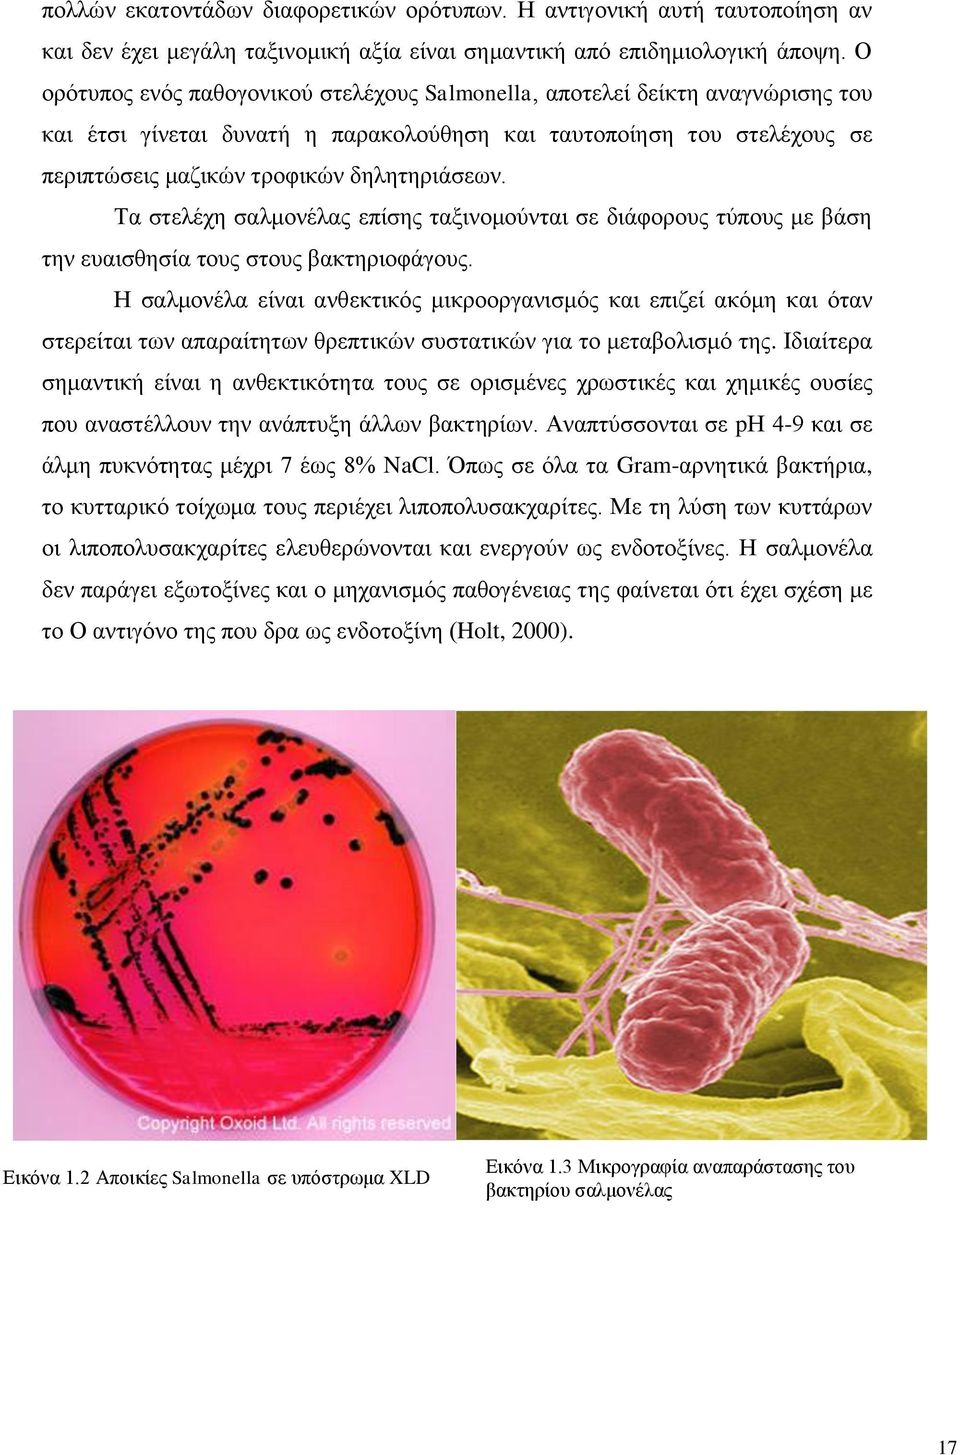 Τα στελέχη σαλμονέλας επίσης ταξινομούνται σε διάφορους τύπους με βάση την ευαισθησία τους στους βακτηριοφάγους.